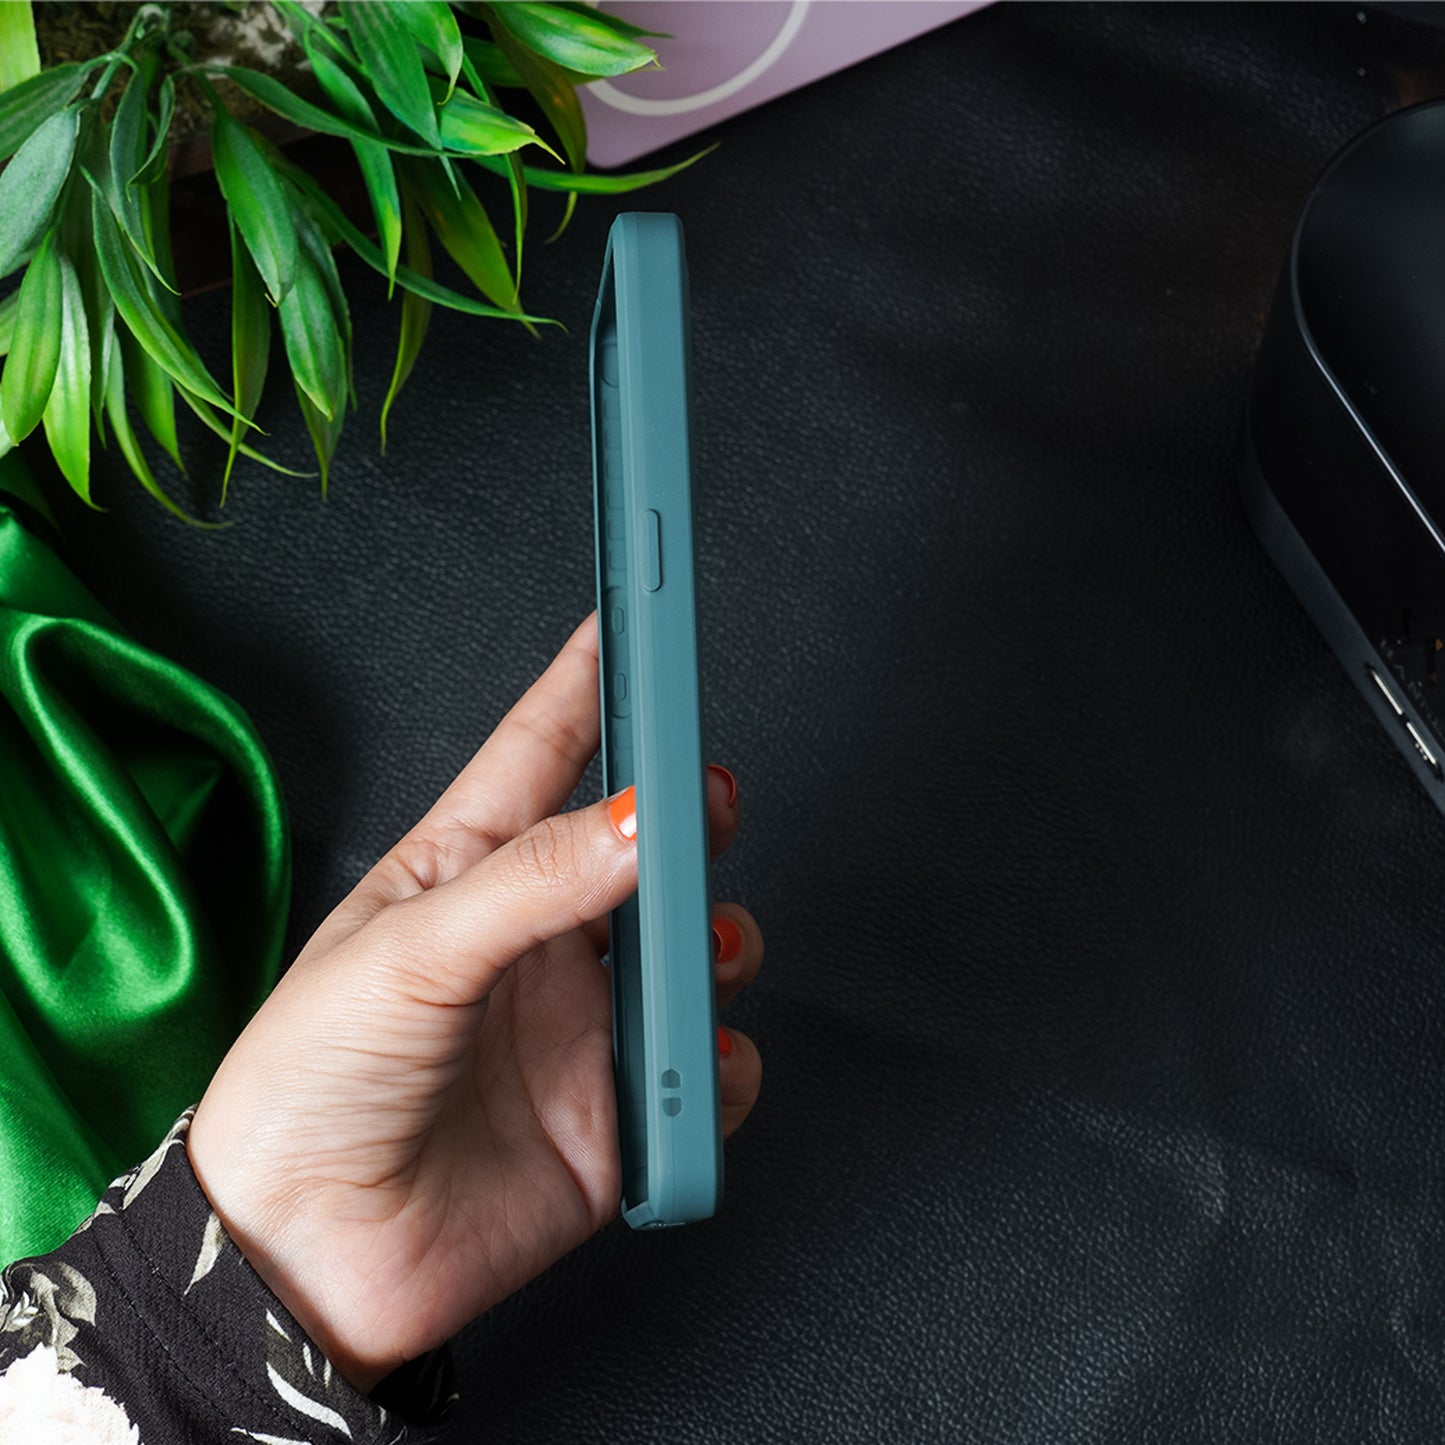 OnePlus 10T Smokey Pattern Glass Case